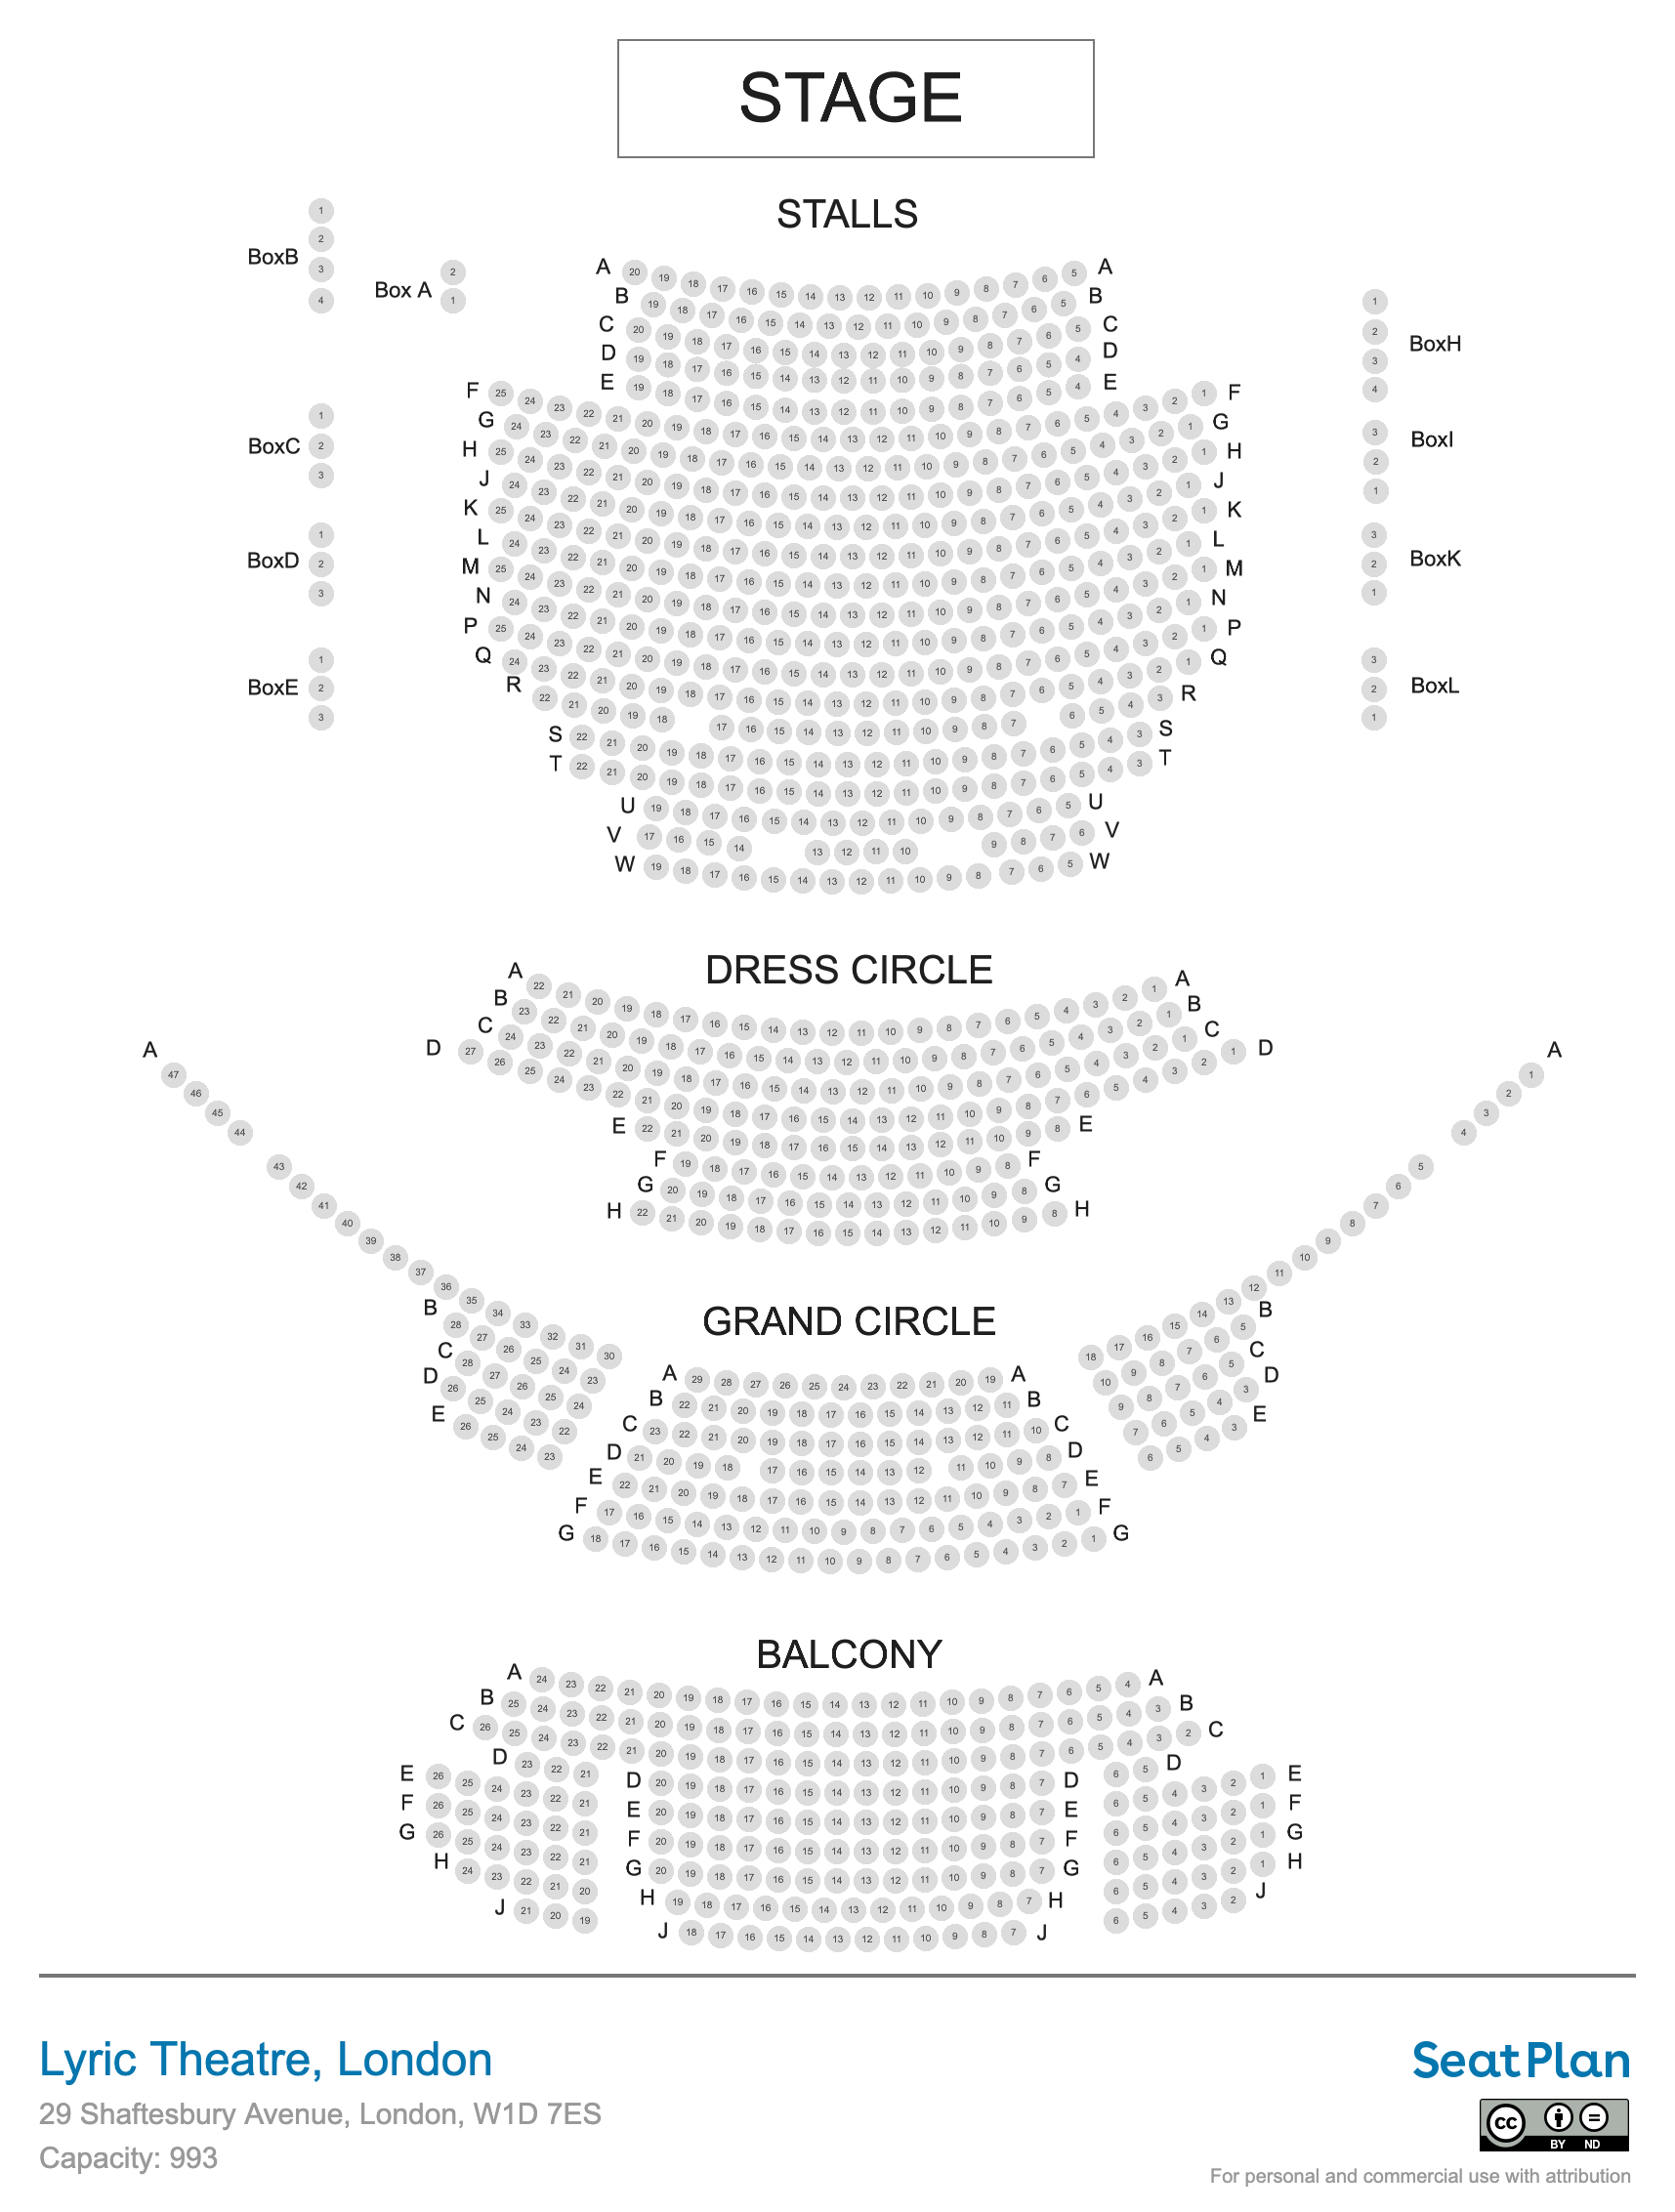 Lyric Theatre seating plan